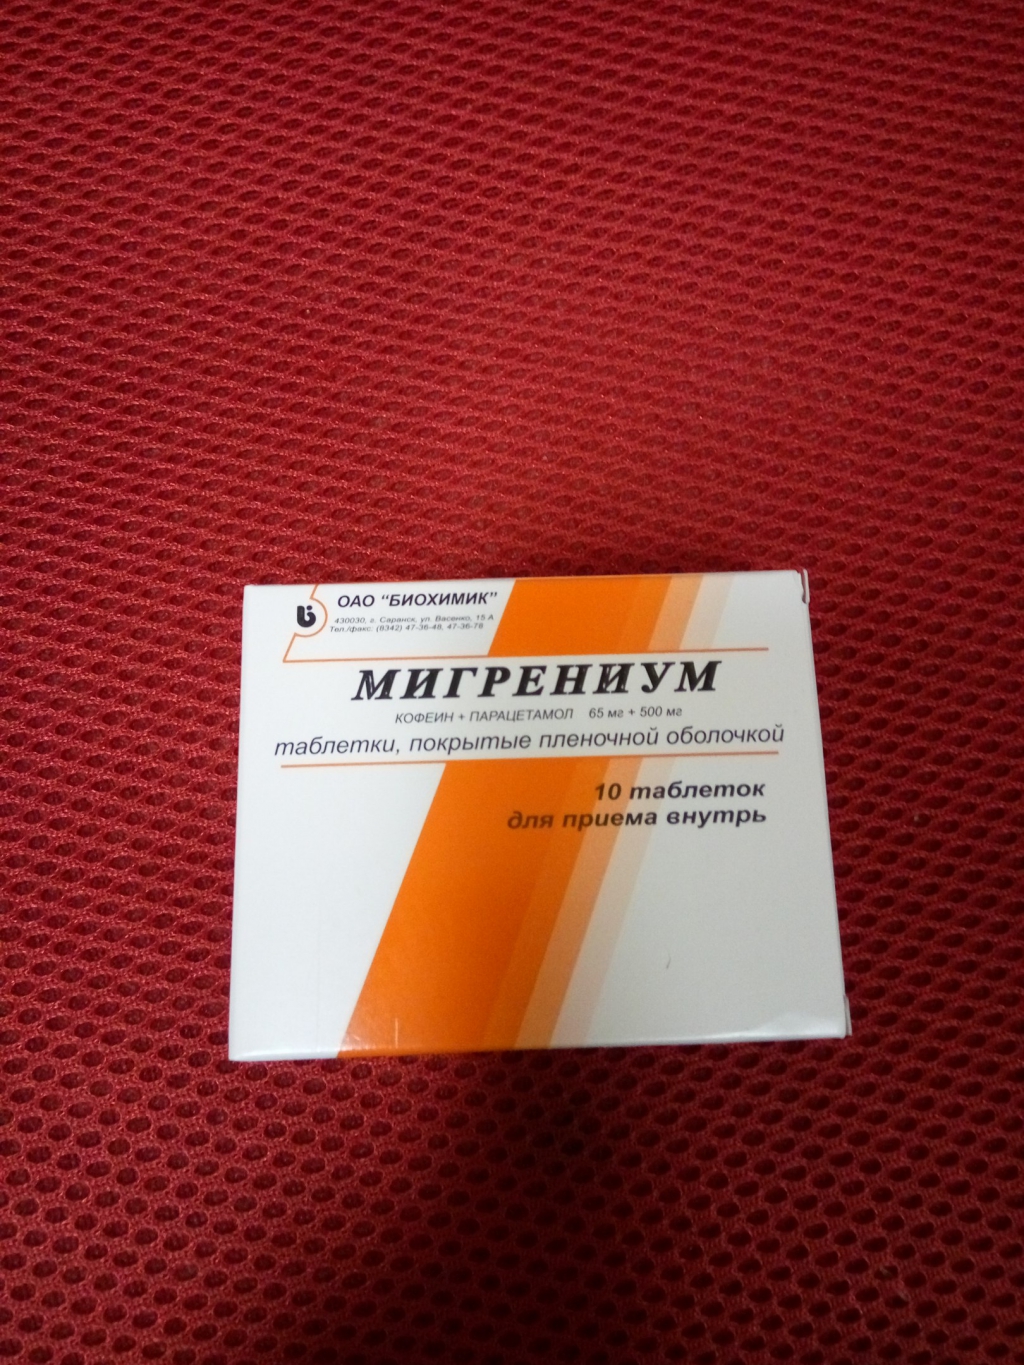 Мигрениум - Хороший и недорогой препарат